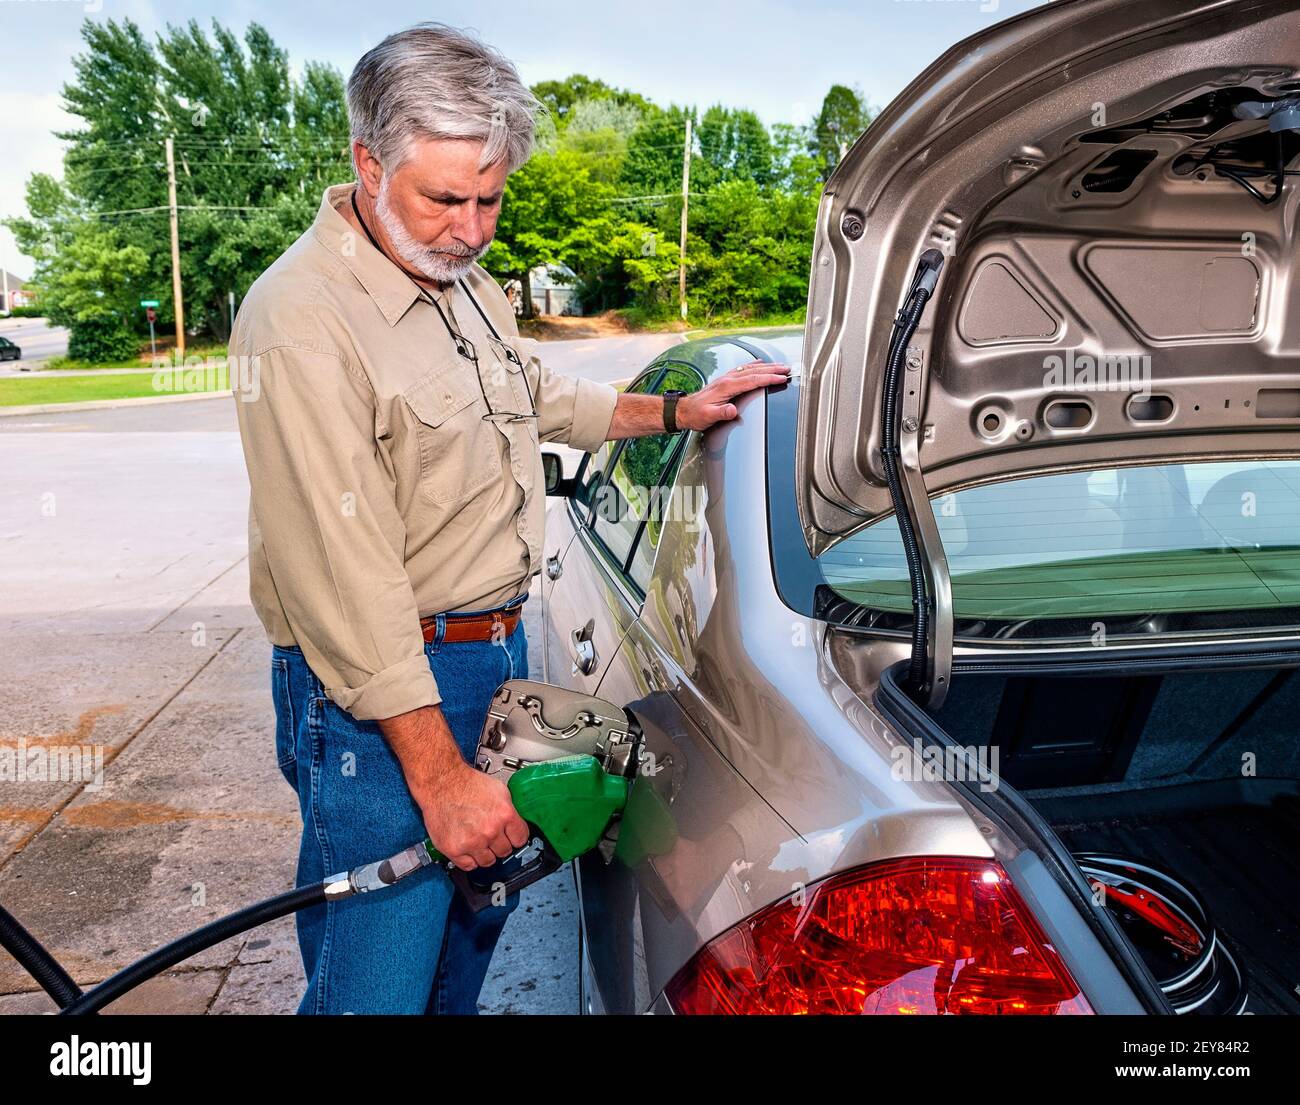 Horizontale Aufnahme eines wütenden älteren Mannes, der Gas pumpt, während die Kraftstoffpreise steigen. Dies ist ein überarbeitetes Bild. Stockfoto